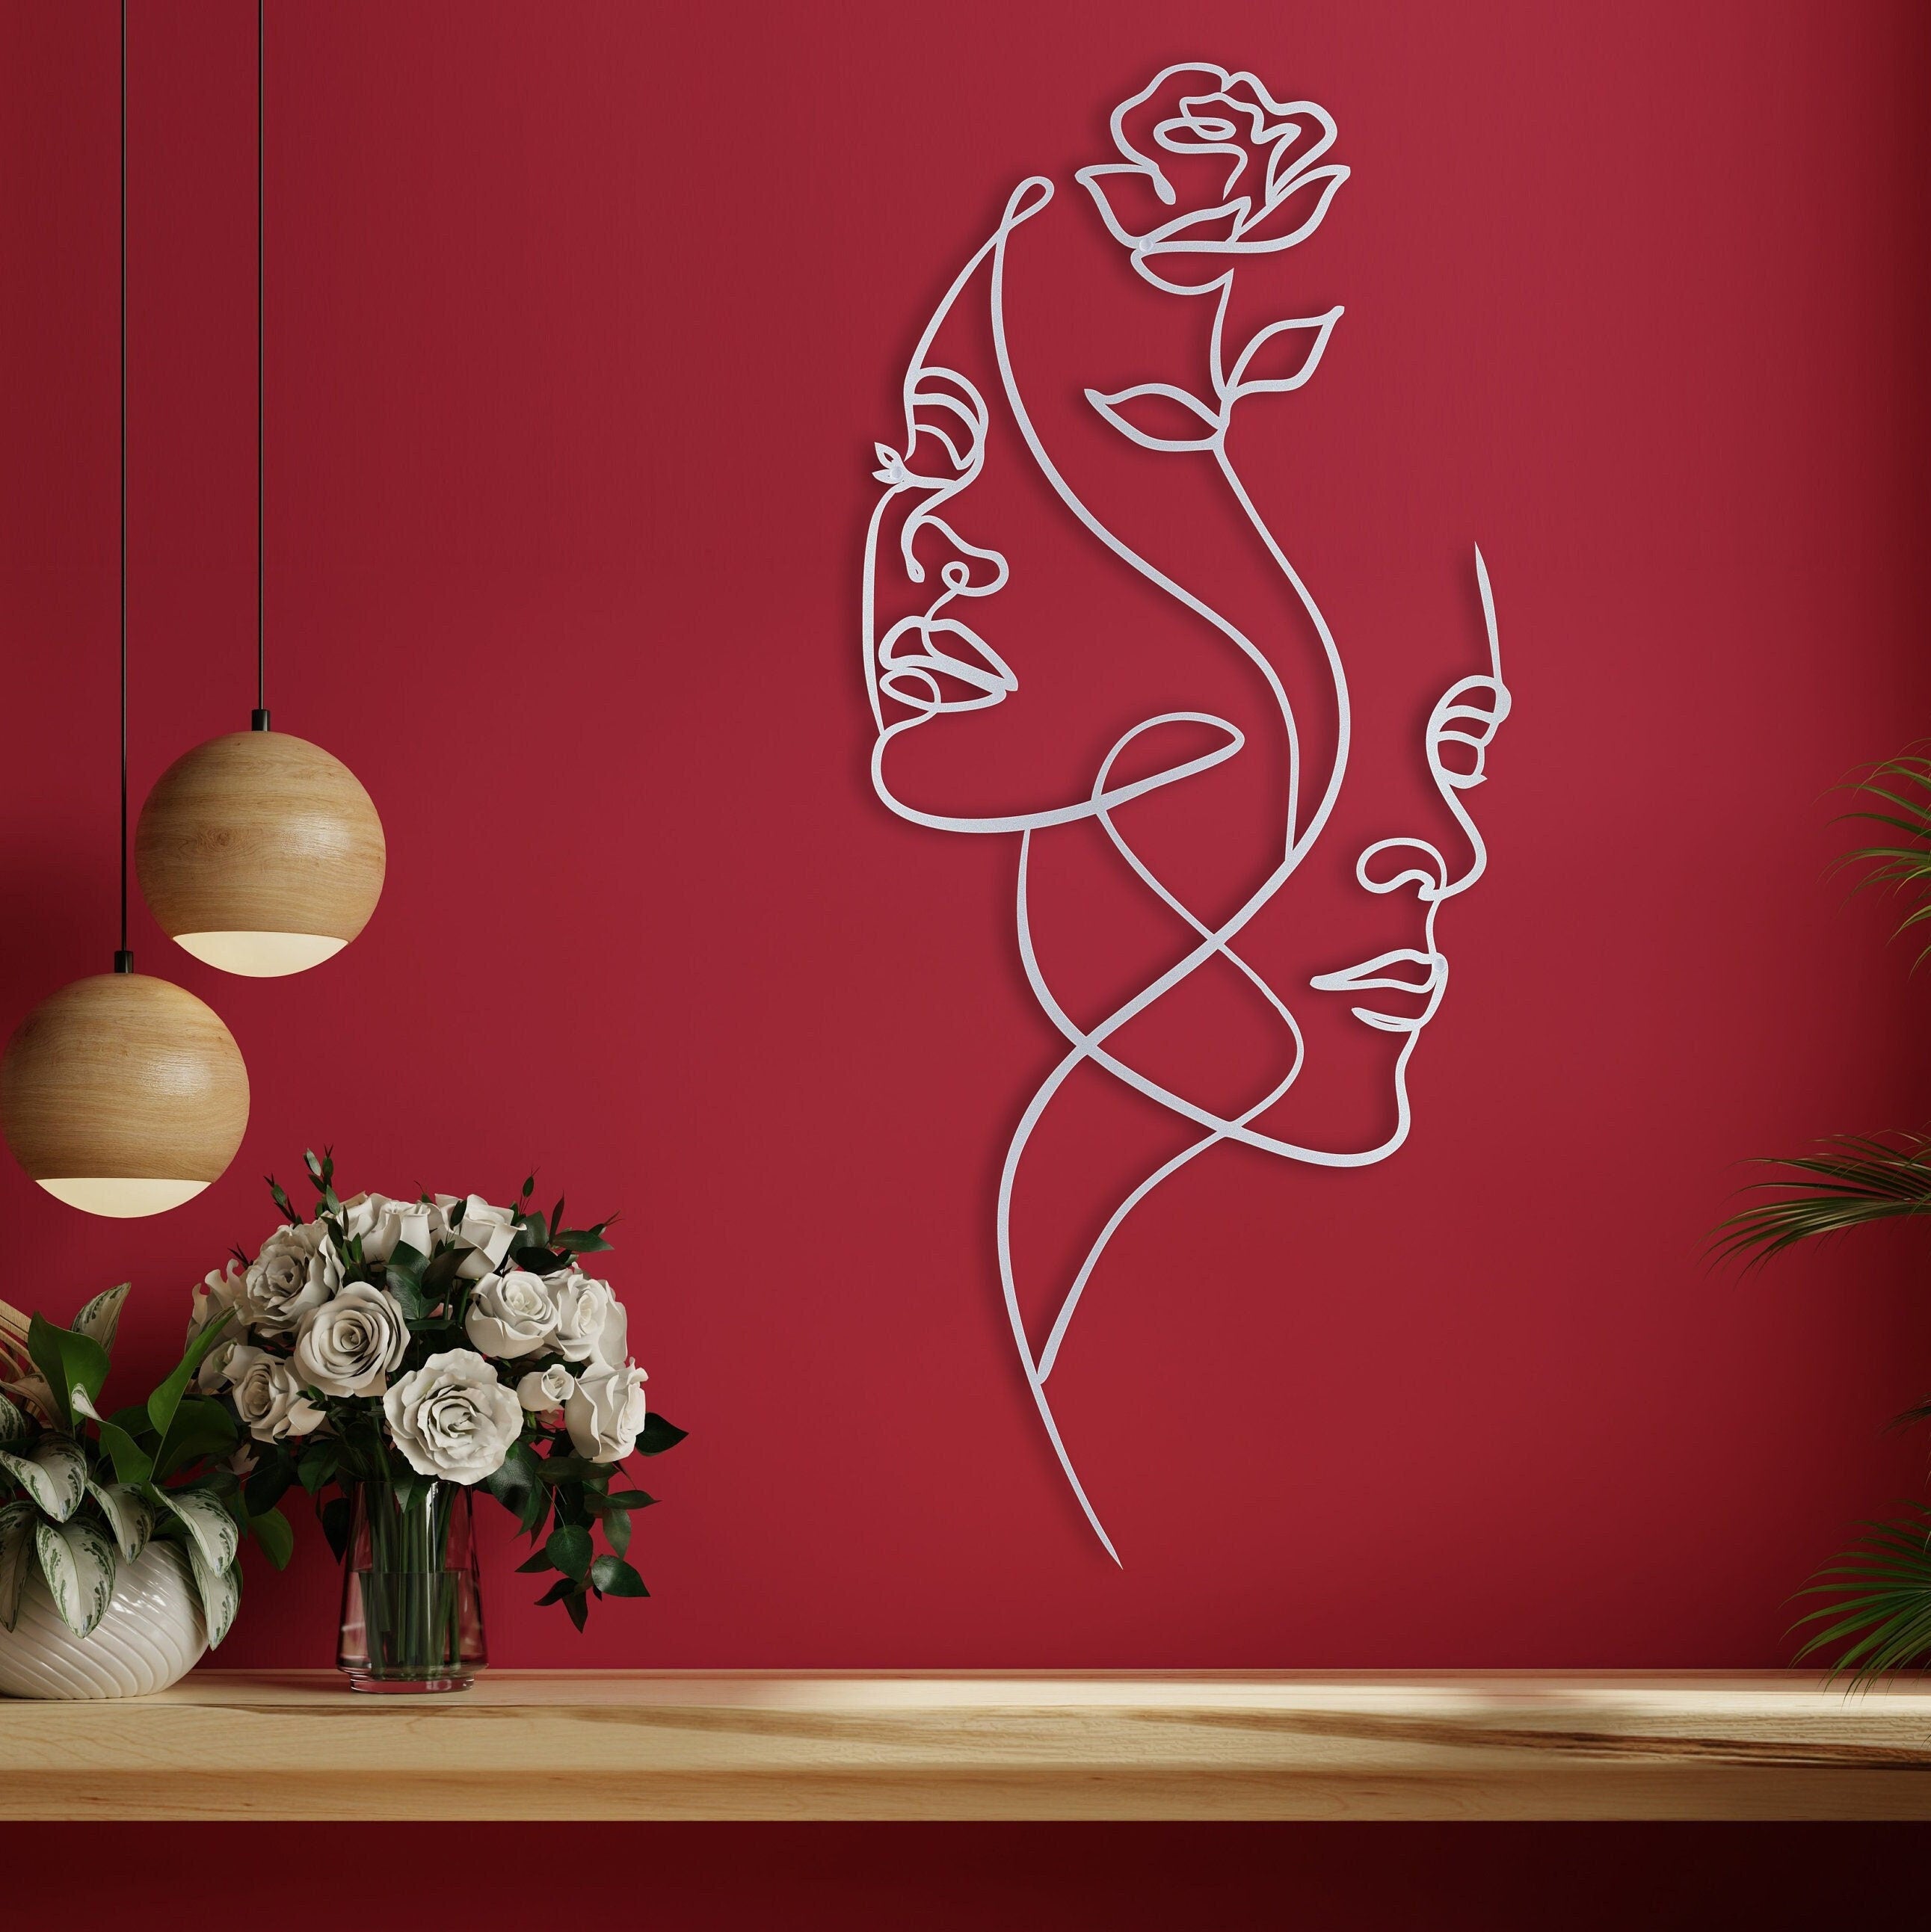 Minimalist Flowers Decor, Minimalist Woman Face Art, Metal Living Room Wall Art, Oversized Room Wall Decor, Metal Wall Decor